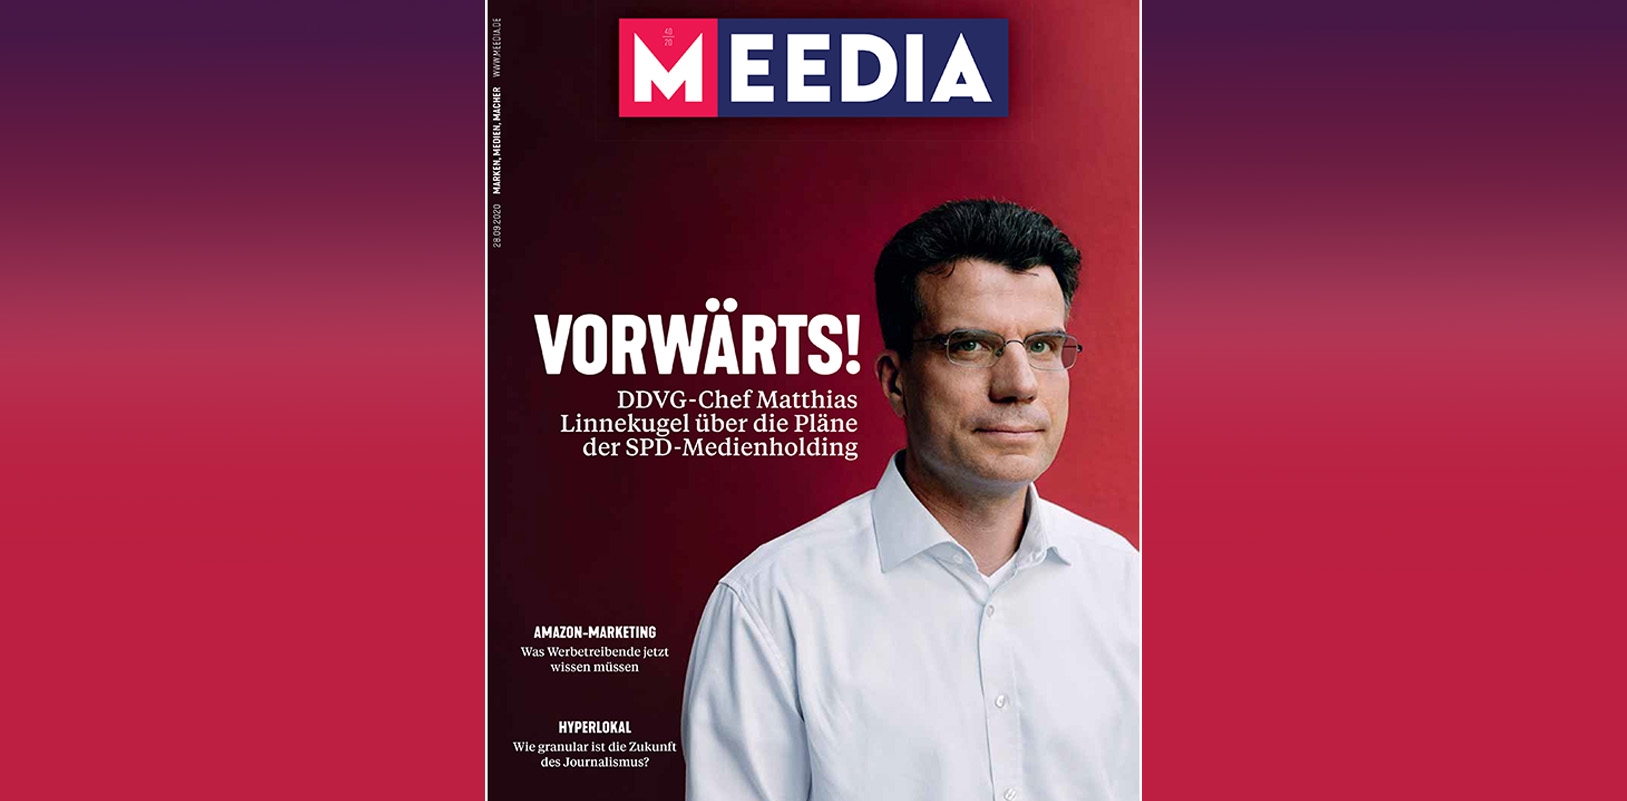 Das ist die neue MEEDIA. In Ausgabe 40 lesen Sie unter anderem das große Interview mit DDVG-Geschäftsführer Matthias Linnekugel. Foto: Henning Kretschmer